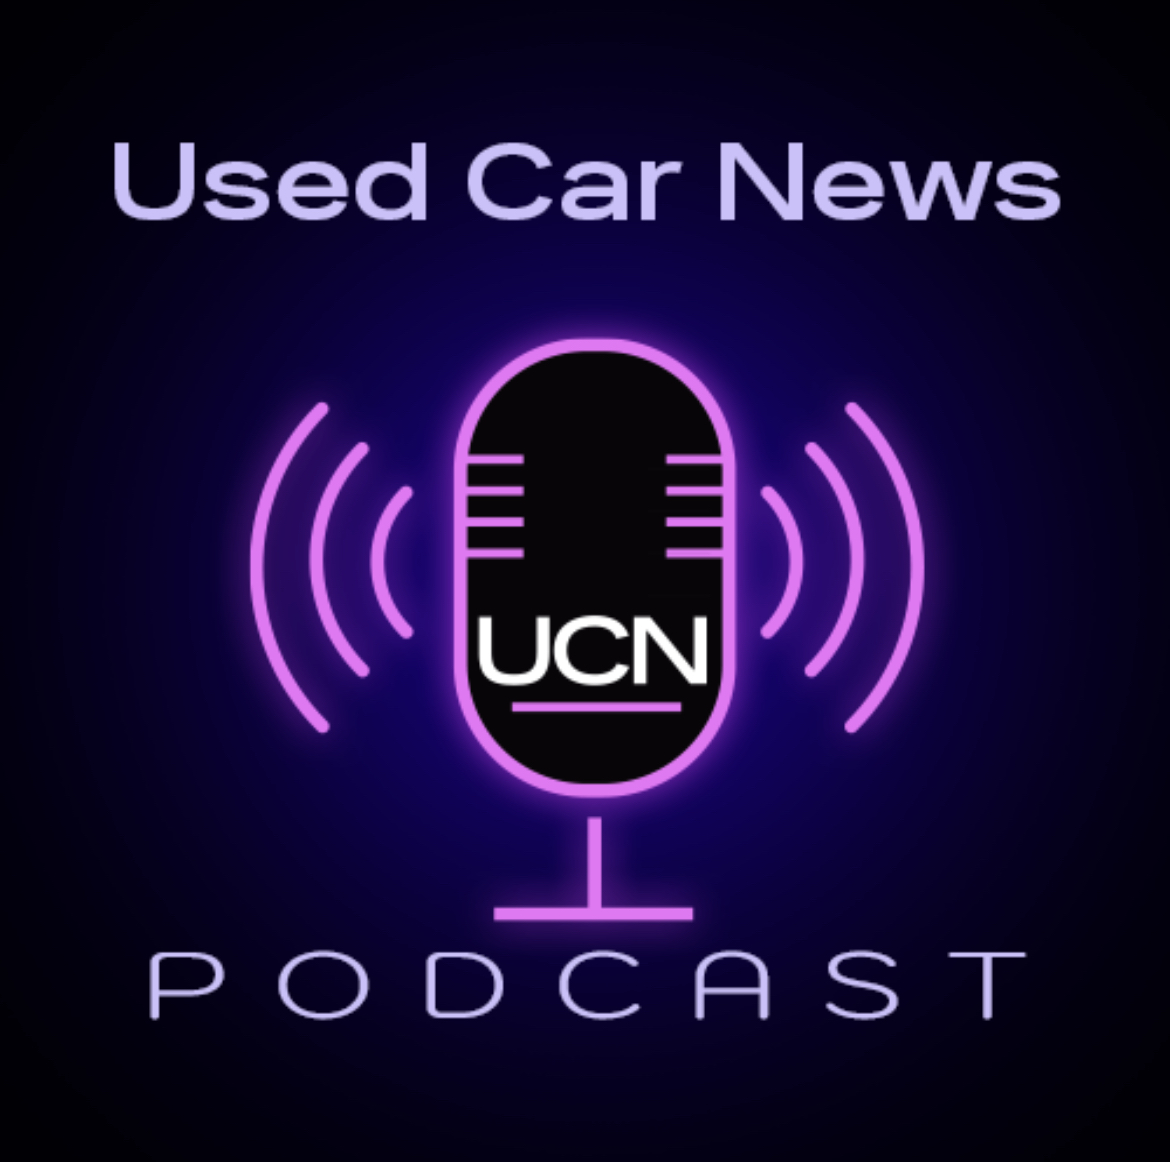 Used Car News